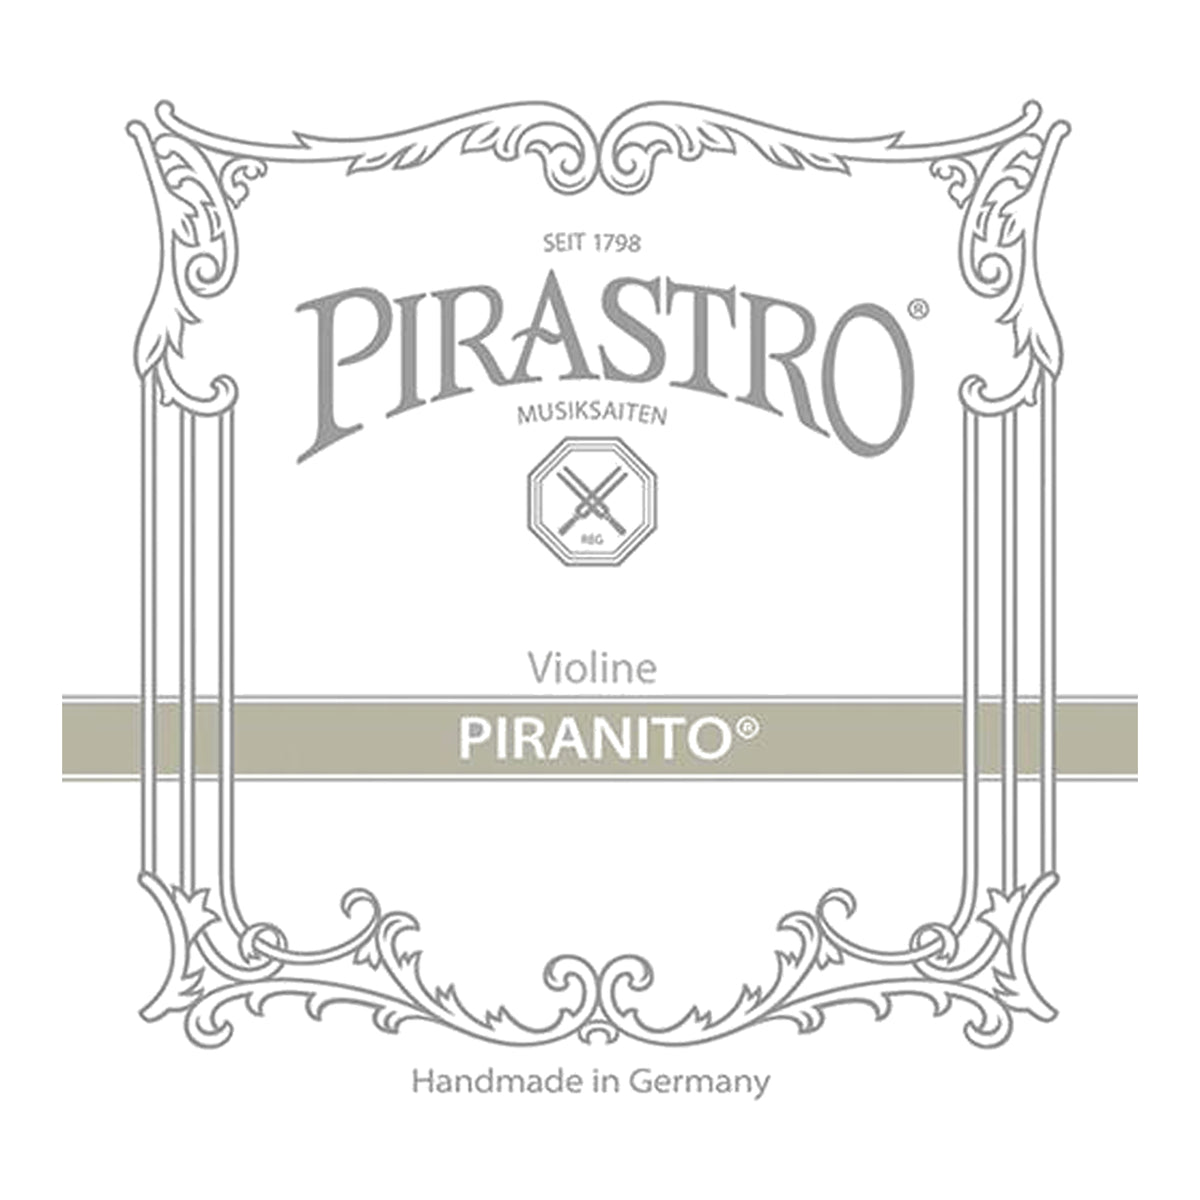 Pirastro Piranito Violin Strings Set 1/2 to 3/4